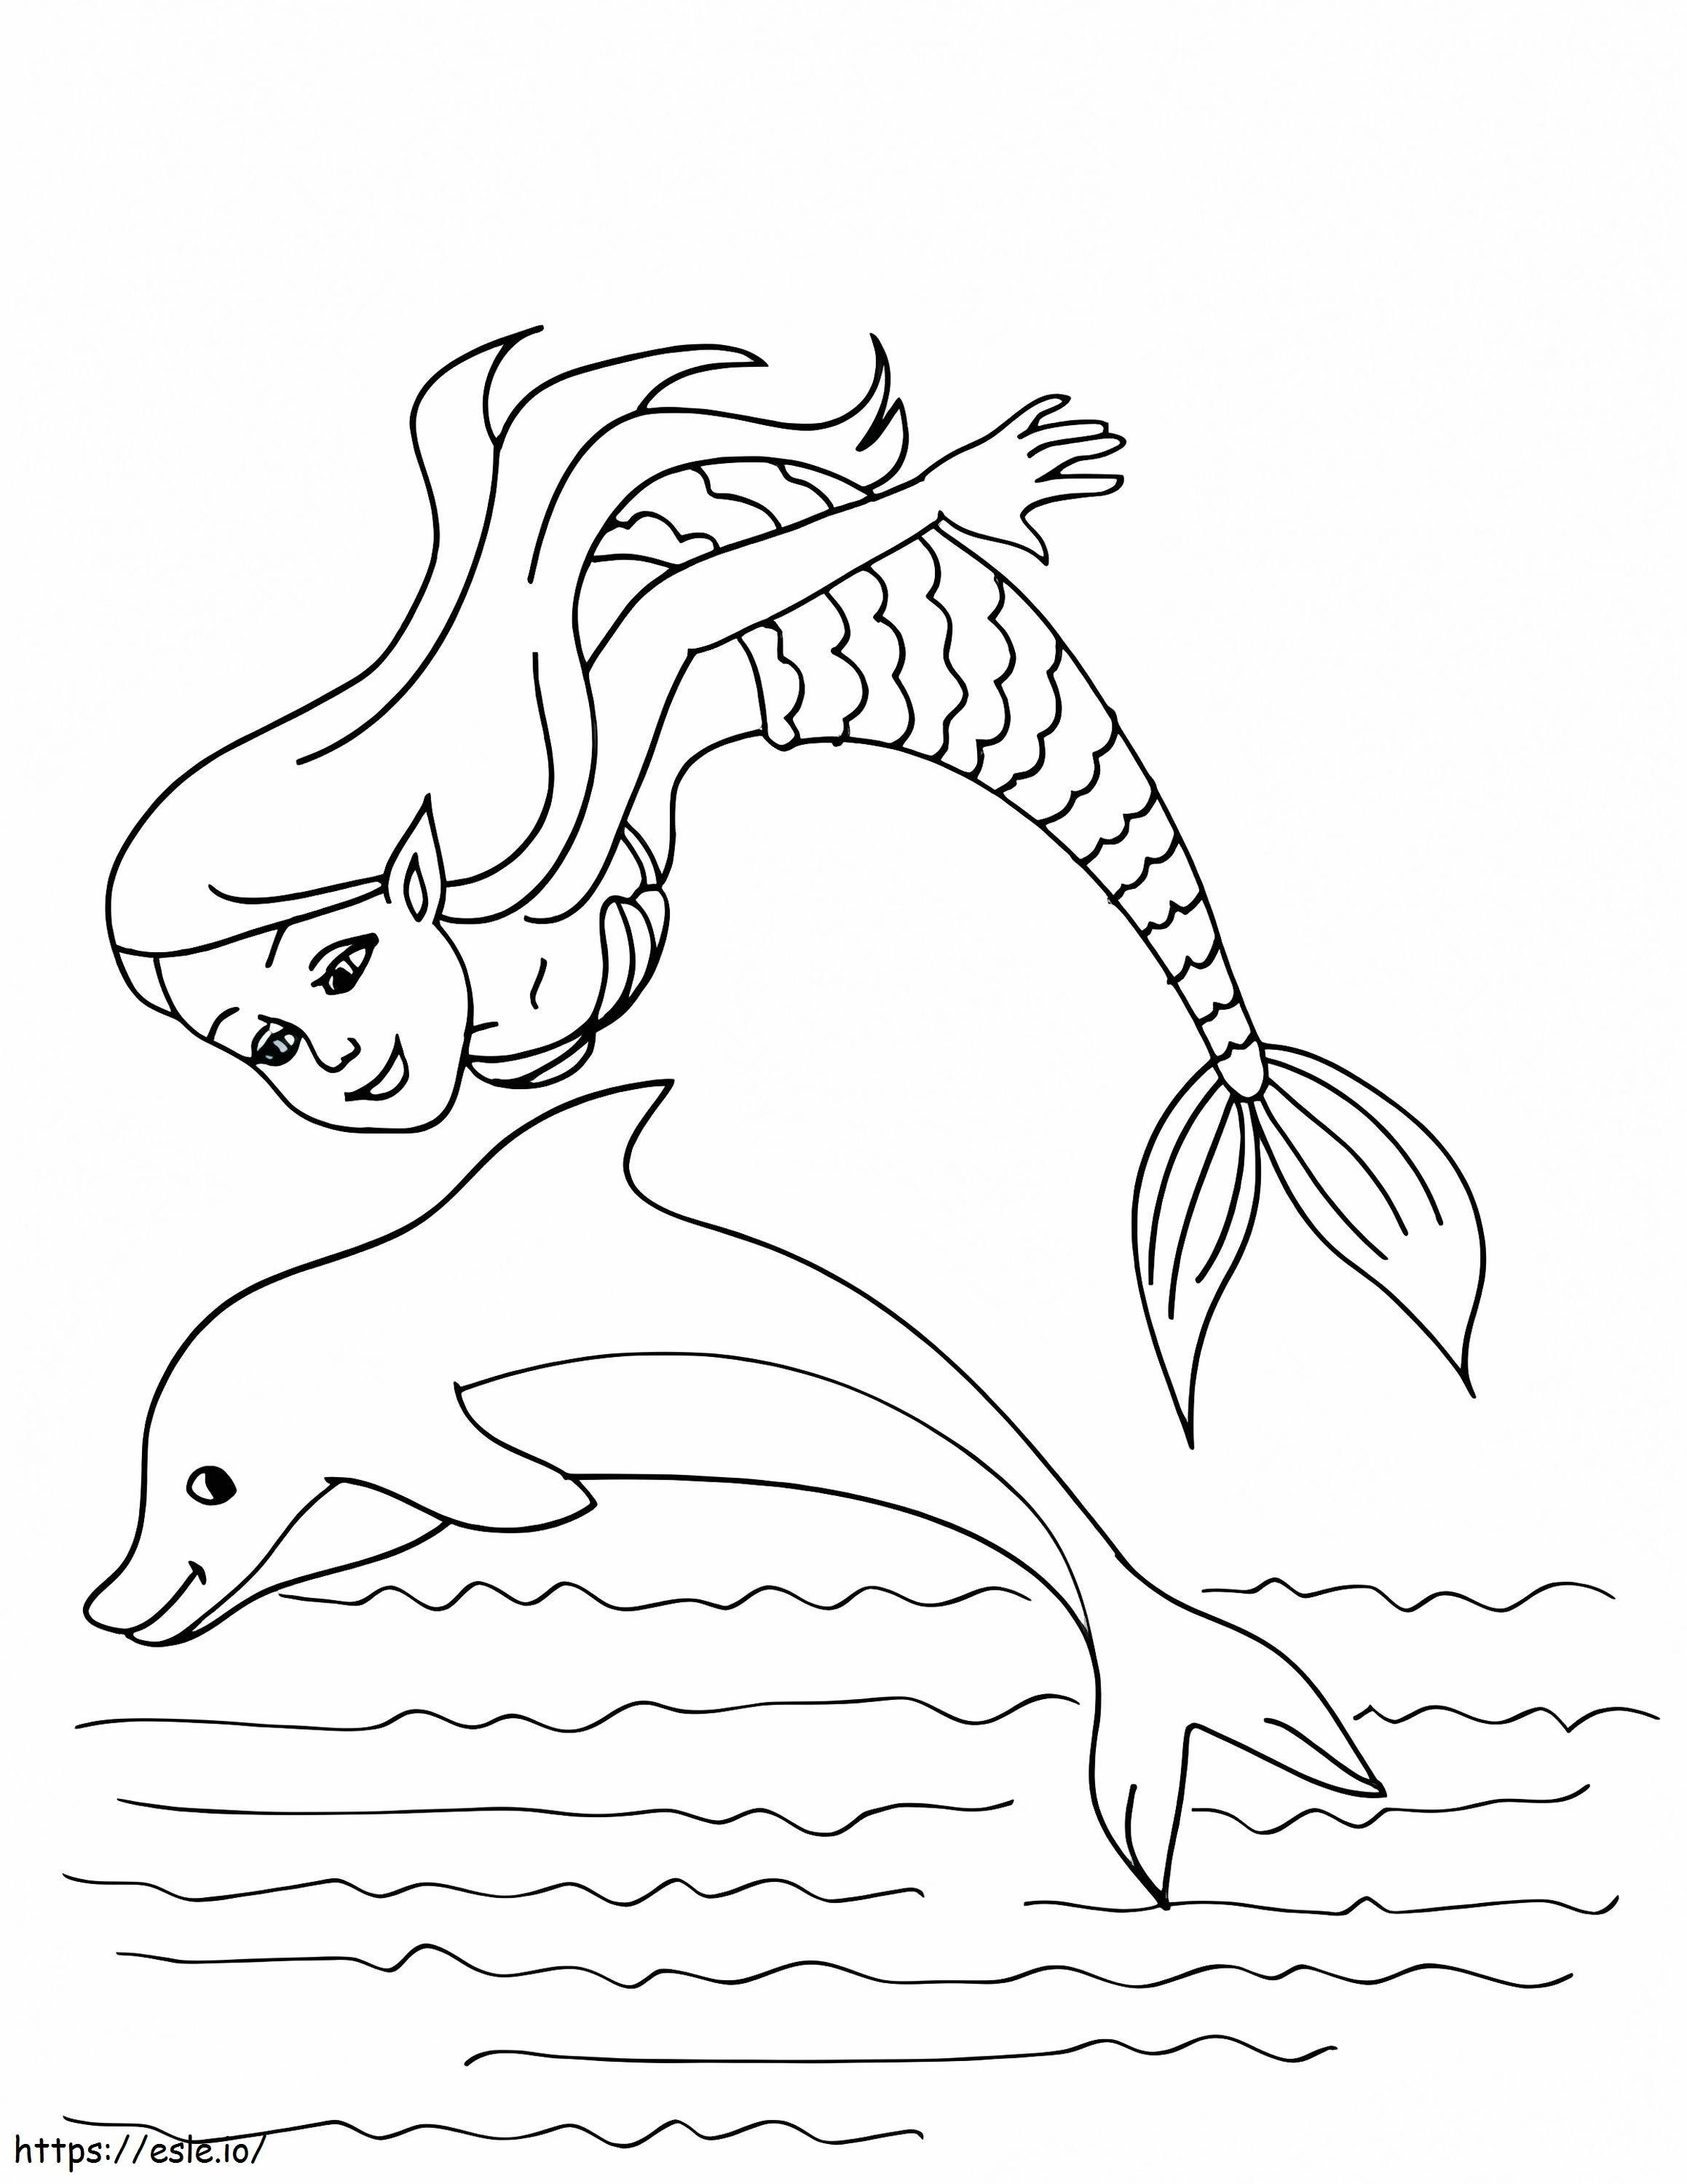 Dolphin Cetak Dolphin Cetak Cetak Dolphin Gambar Mewarnai